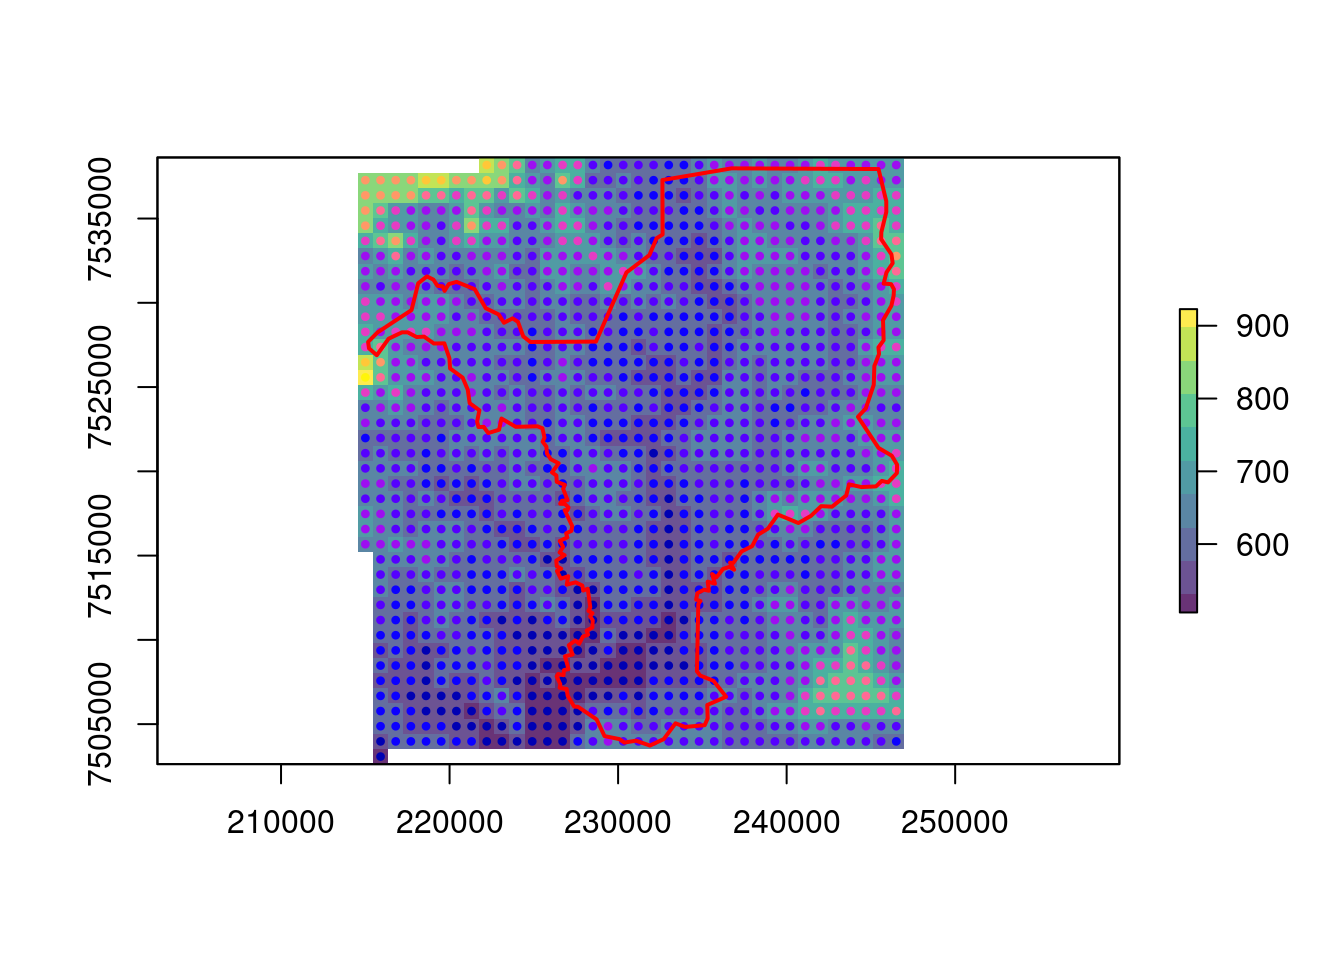 Vetorização do raster de elevação criando um gride de pontos para Rio Claro/SP.